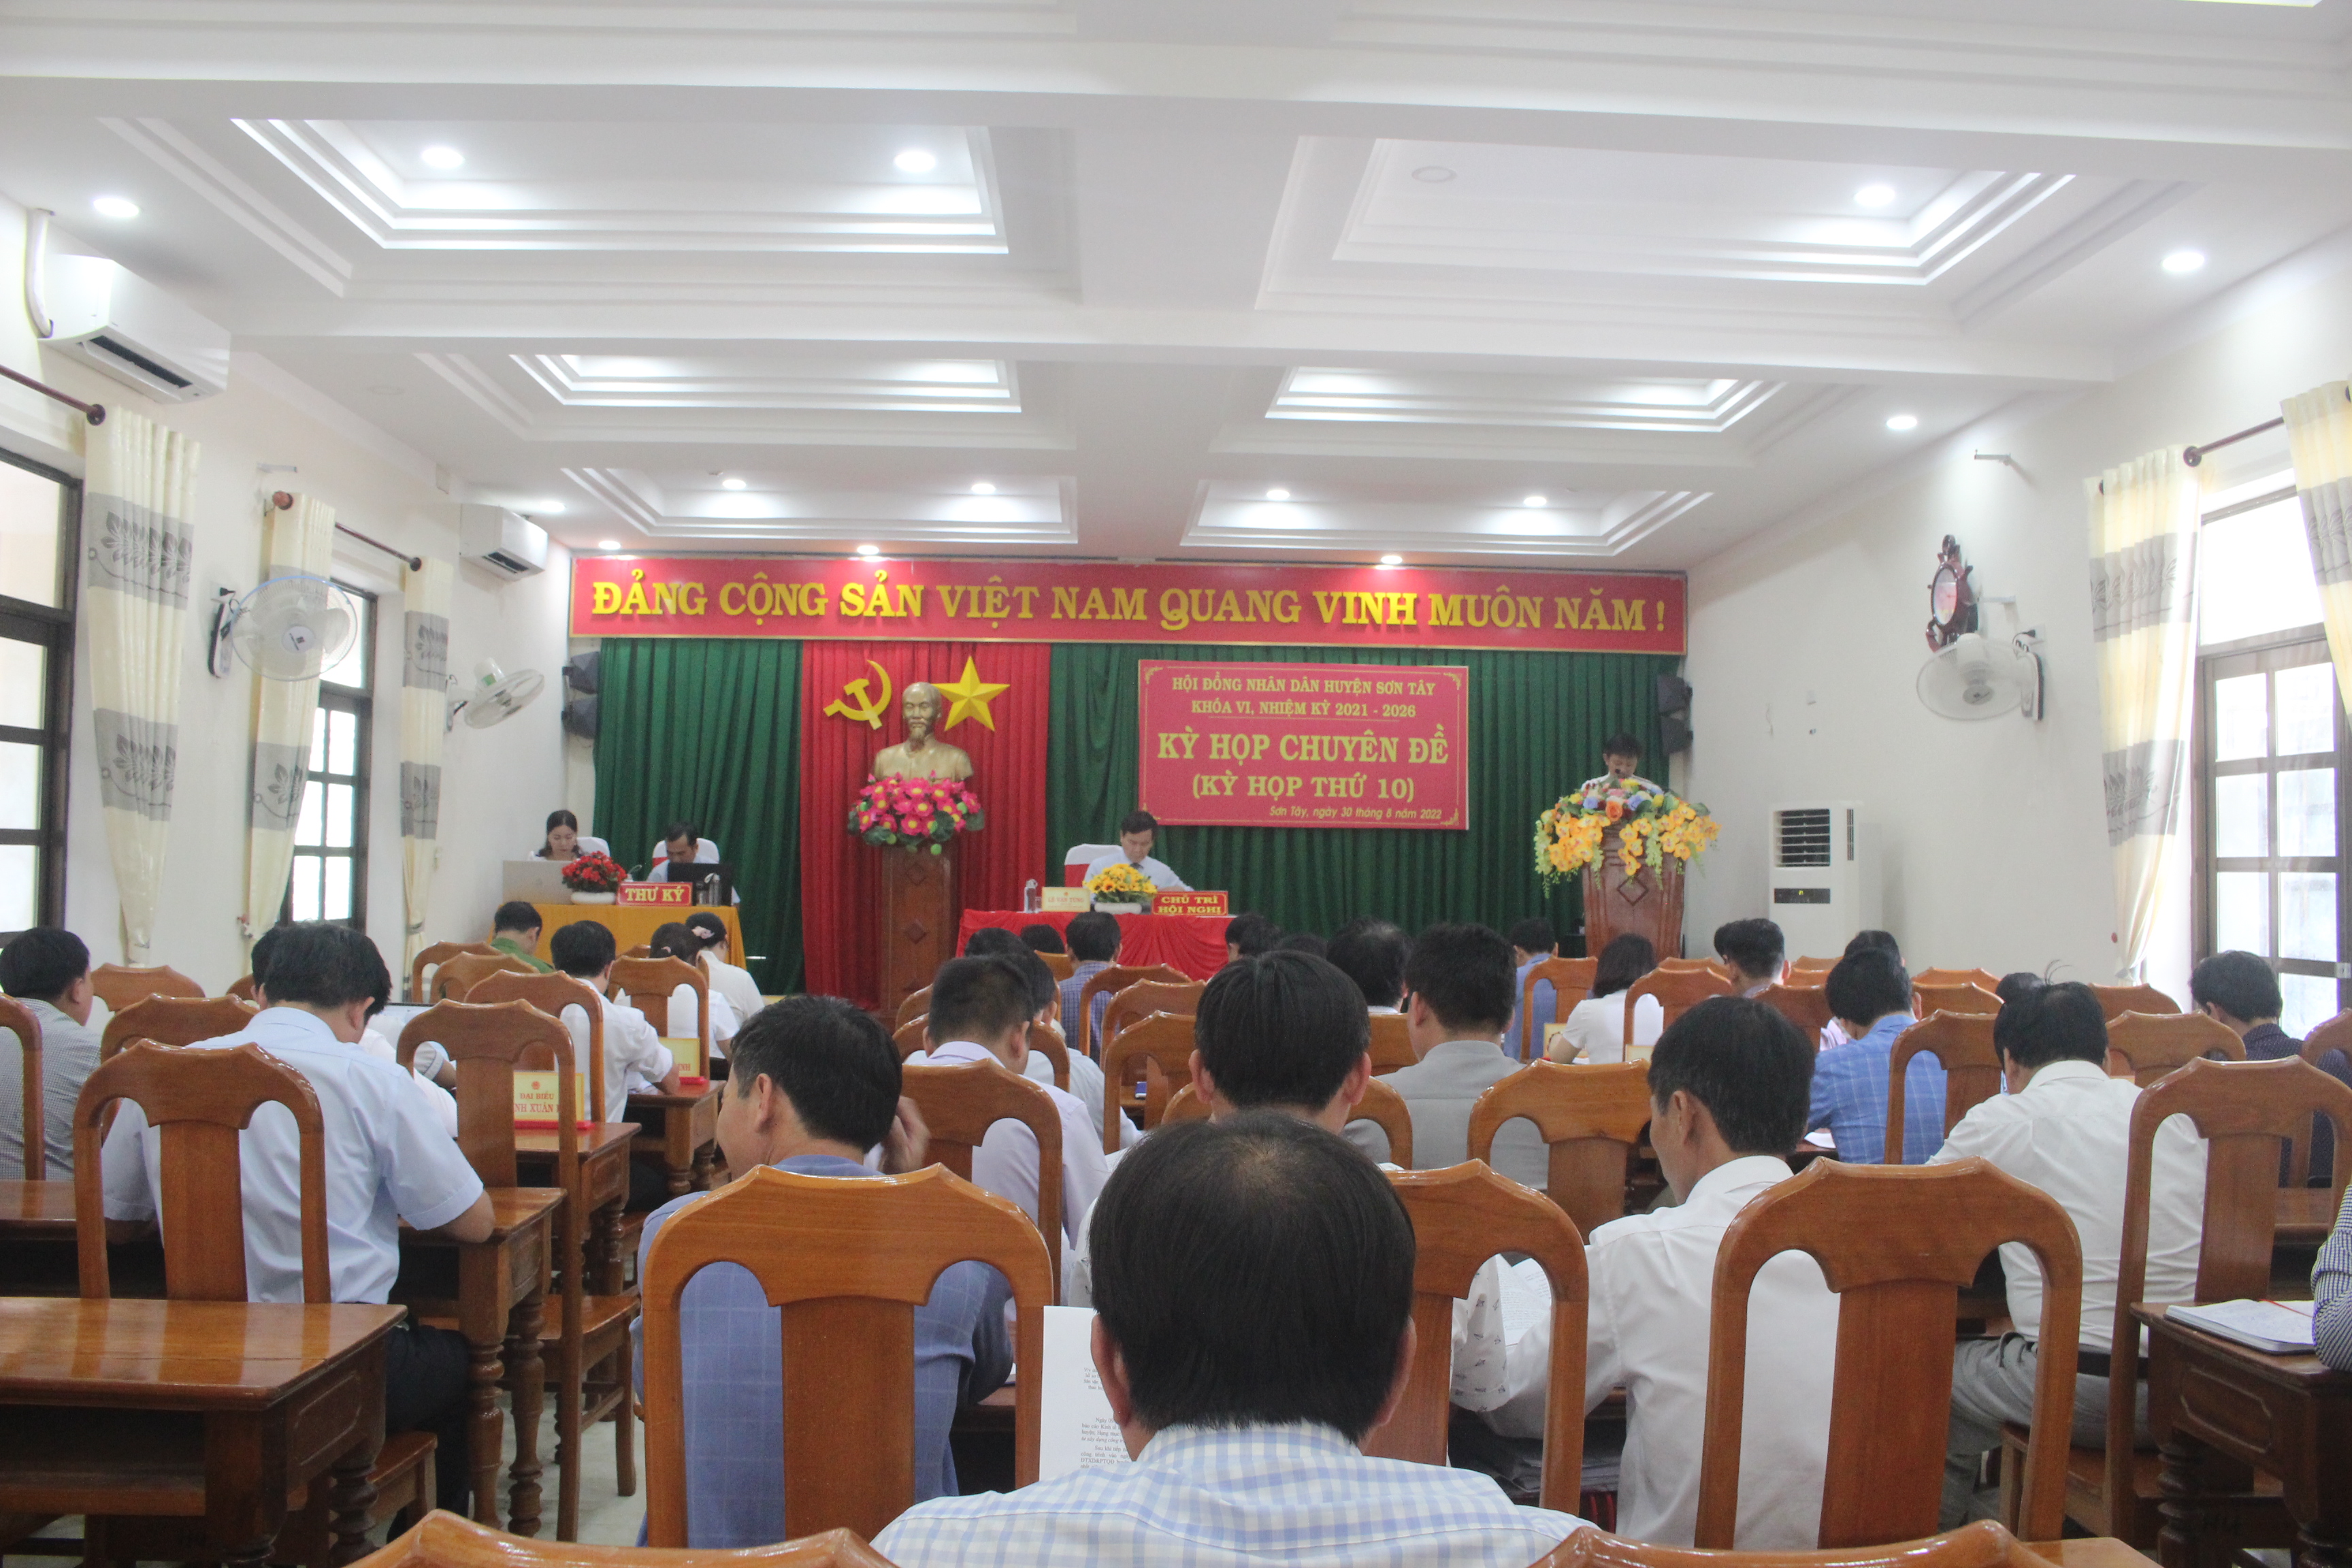 HĐND huyện Sơn Tây khóa VI tổ chức kỳ họp chuyên đề (Kỳ họp thứ 10).